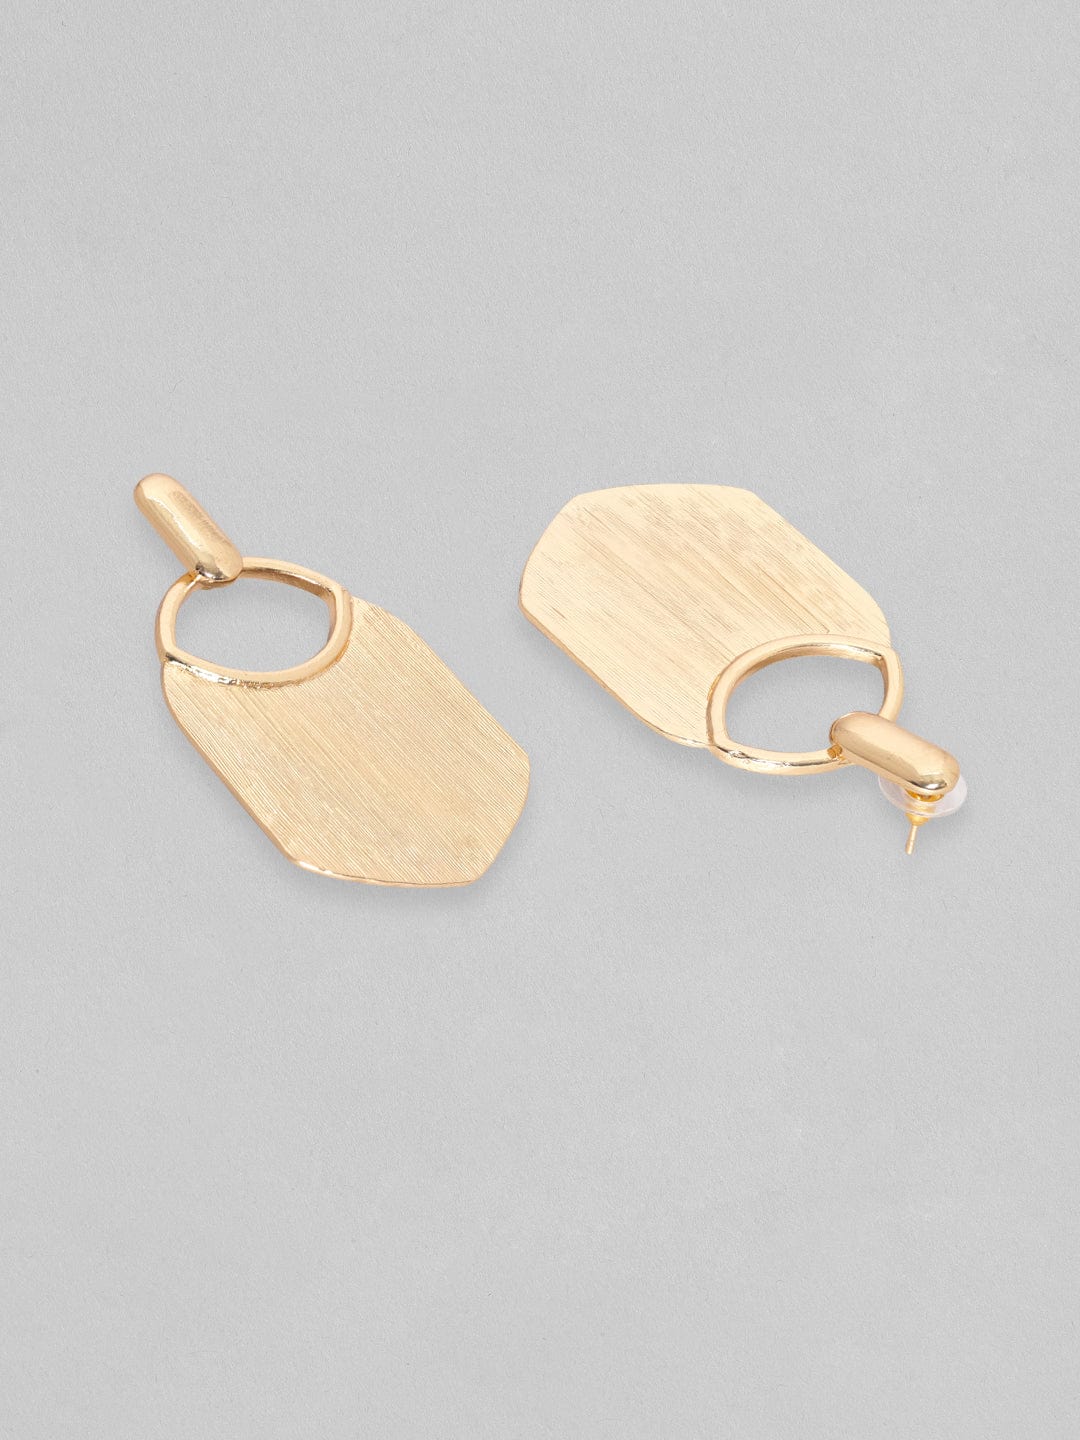 Rubans Gold Toned Textured Statement Tassel Earrings Earrings